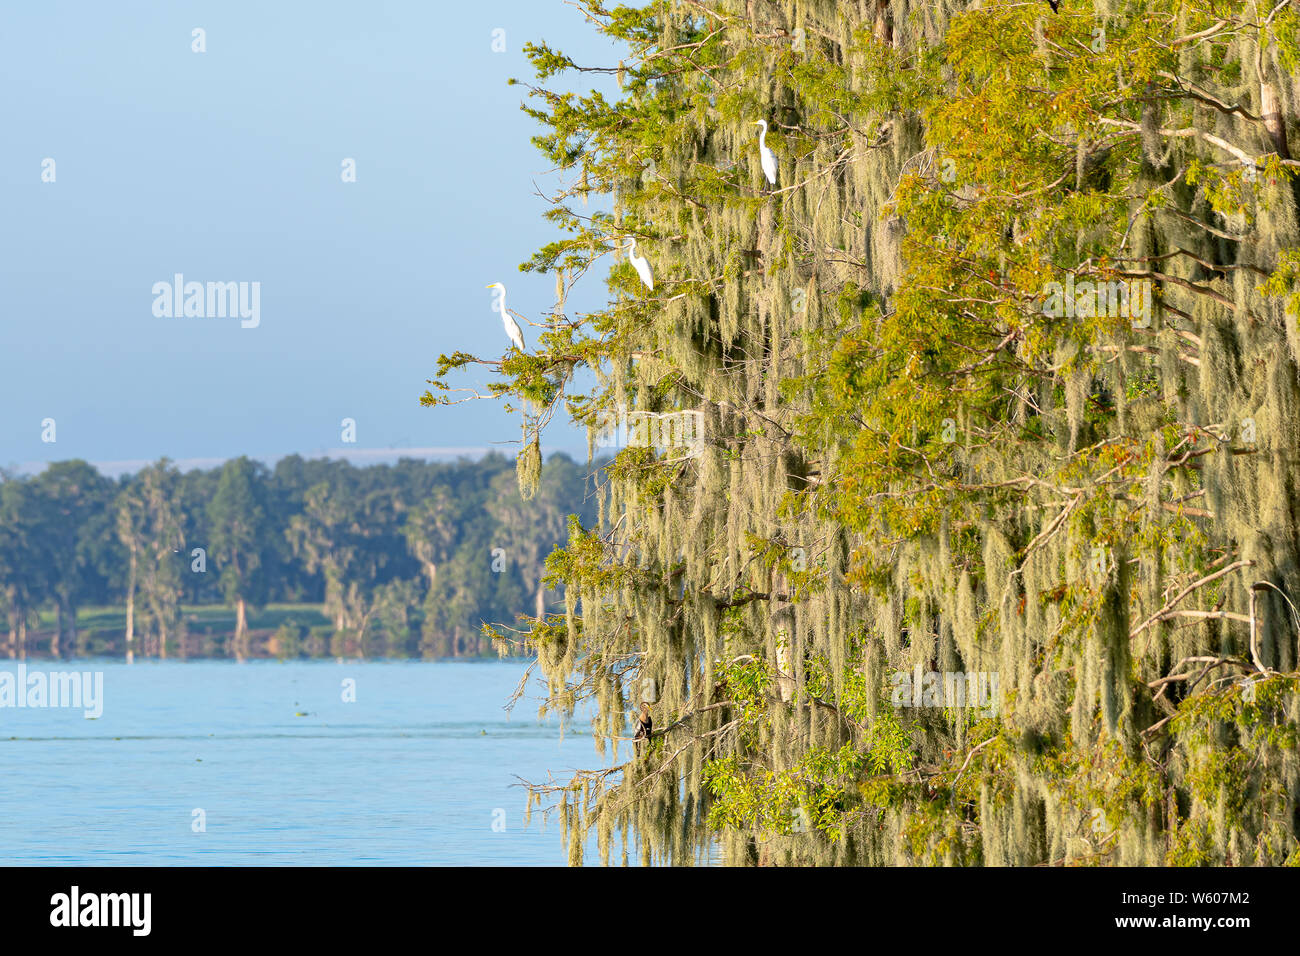 Les arbres moussus sur un lac en Floride avec beaucoup d'aigrettes blanches perchées sur leurs branches Banque D'Images